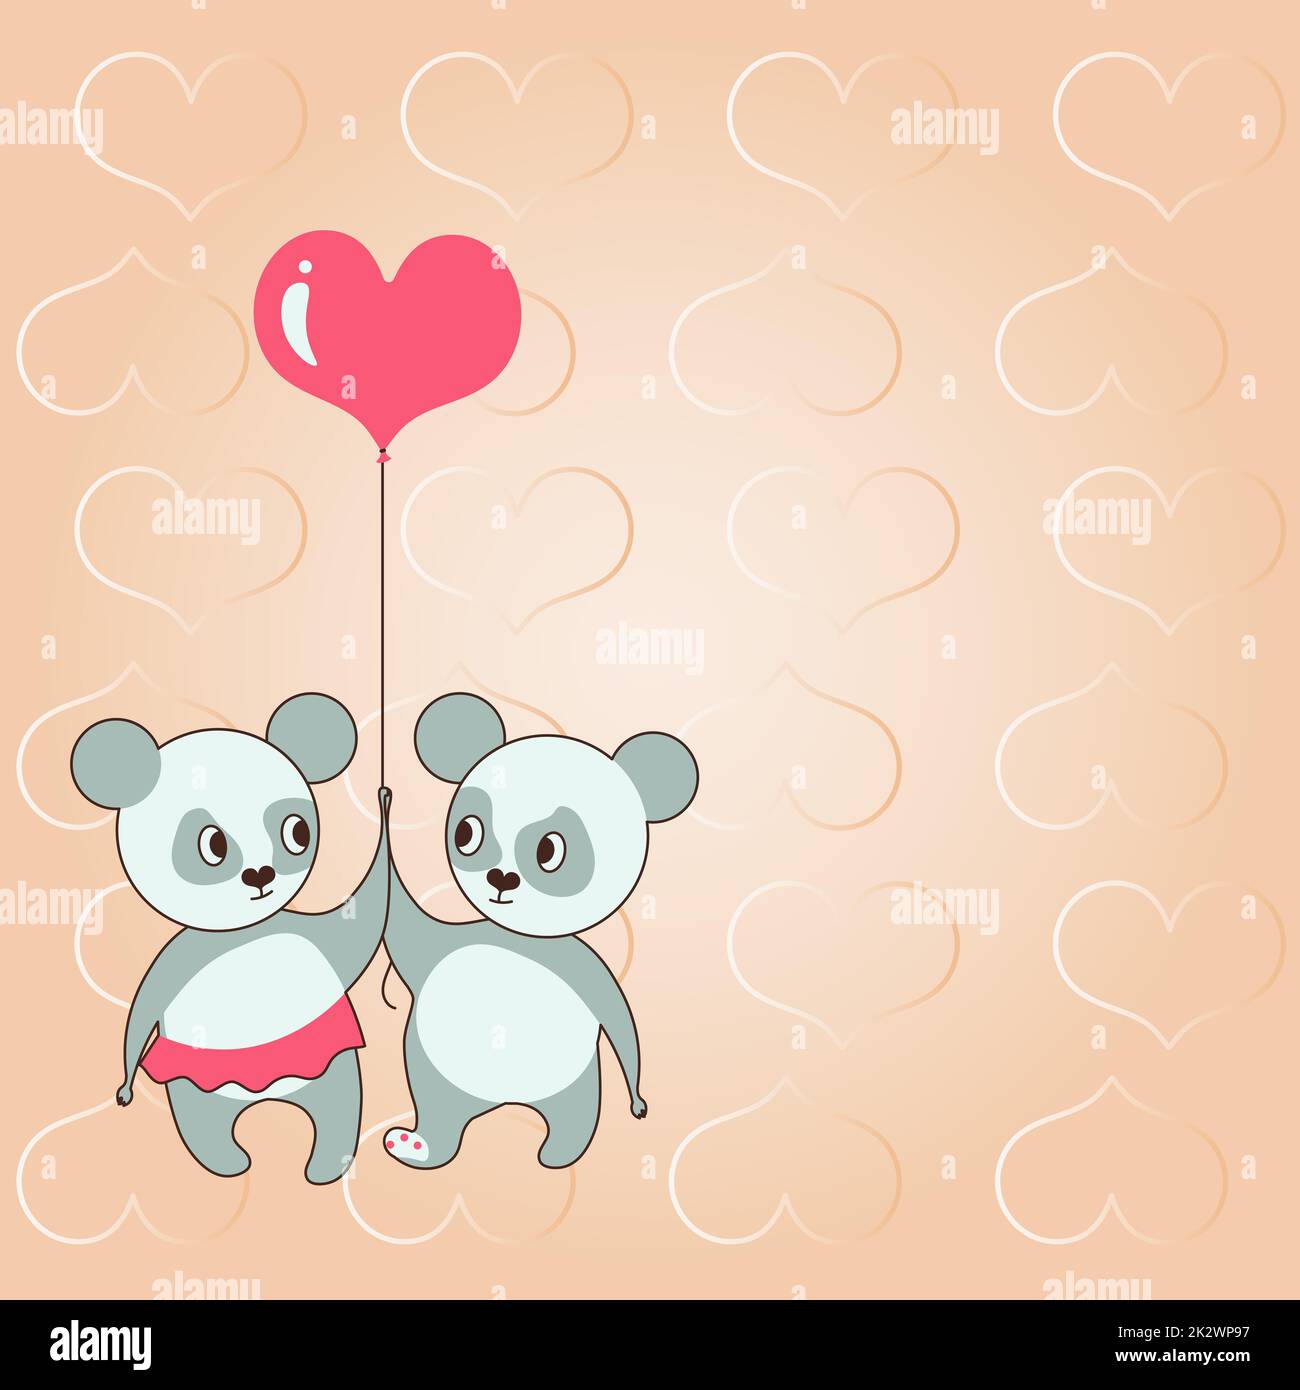 Zwei Bären, die einen herzförmigen Ballon halten, mit Herzen im Hintergrund zeigen Liebe und Harmonie. Teddybär repräsentiert leidenschaftliches Paar mit Liebeszielen. Stockfoto